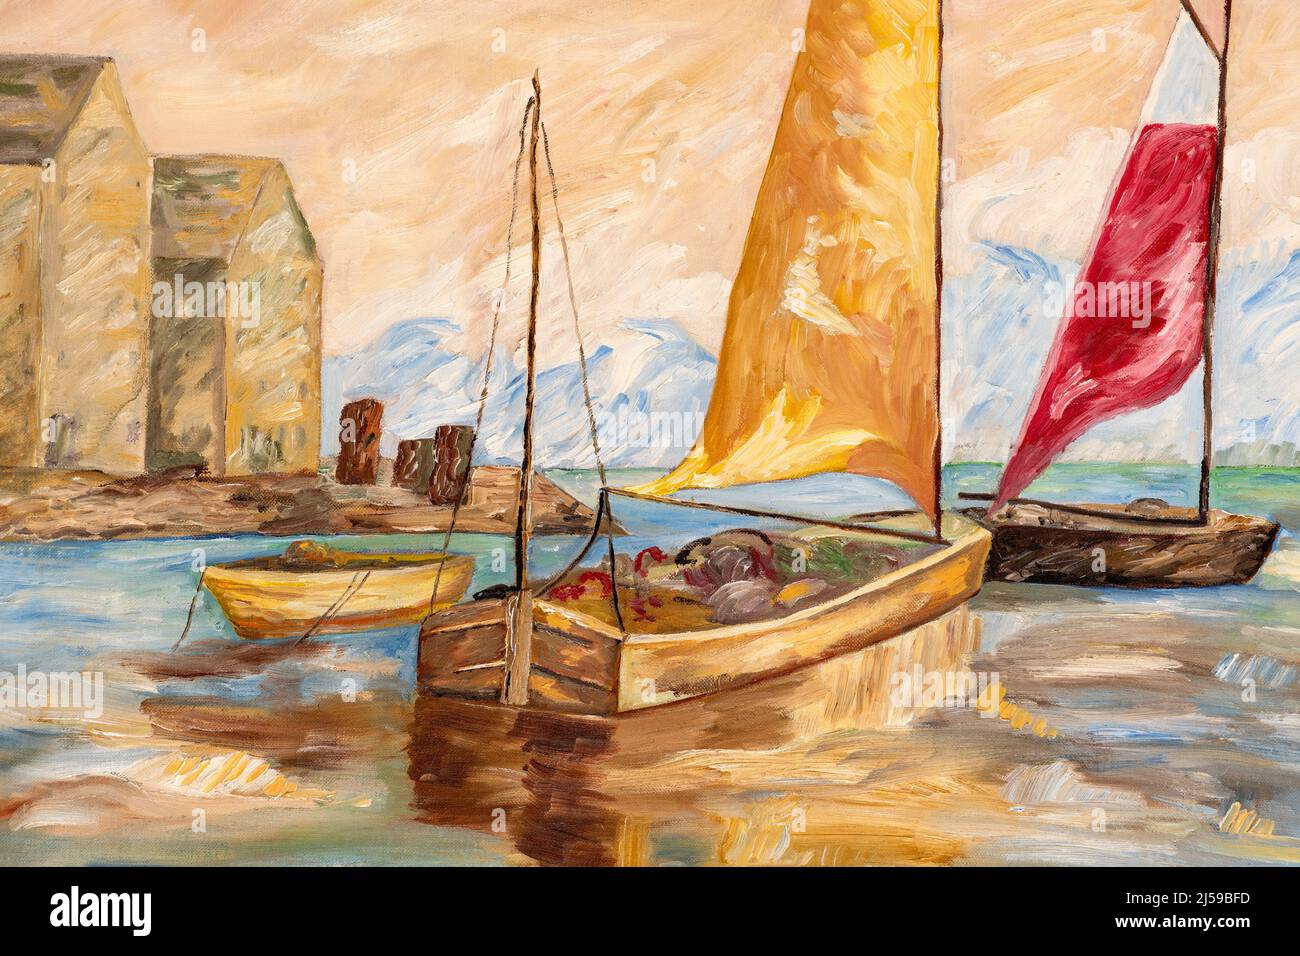 Fragment de peinture à l'huile avec des coups de pinceau épais représentant des bateaux de pêche et des cabanes dans un port. Art impressionnisme Banque D'Images